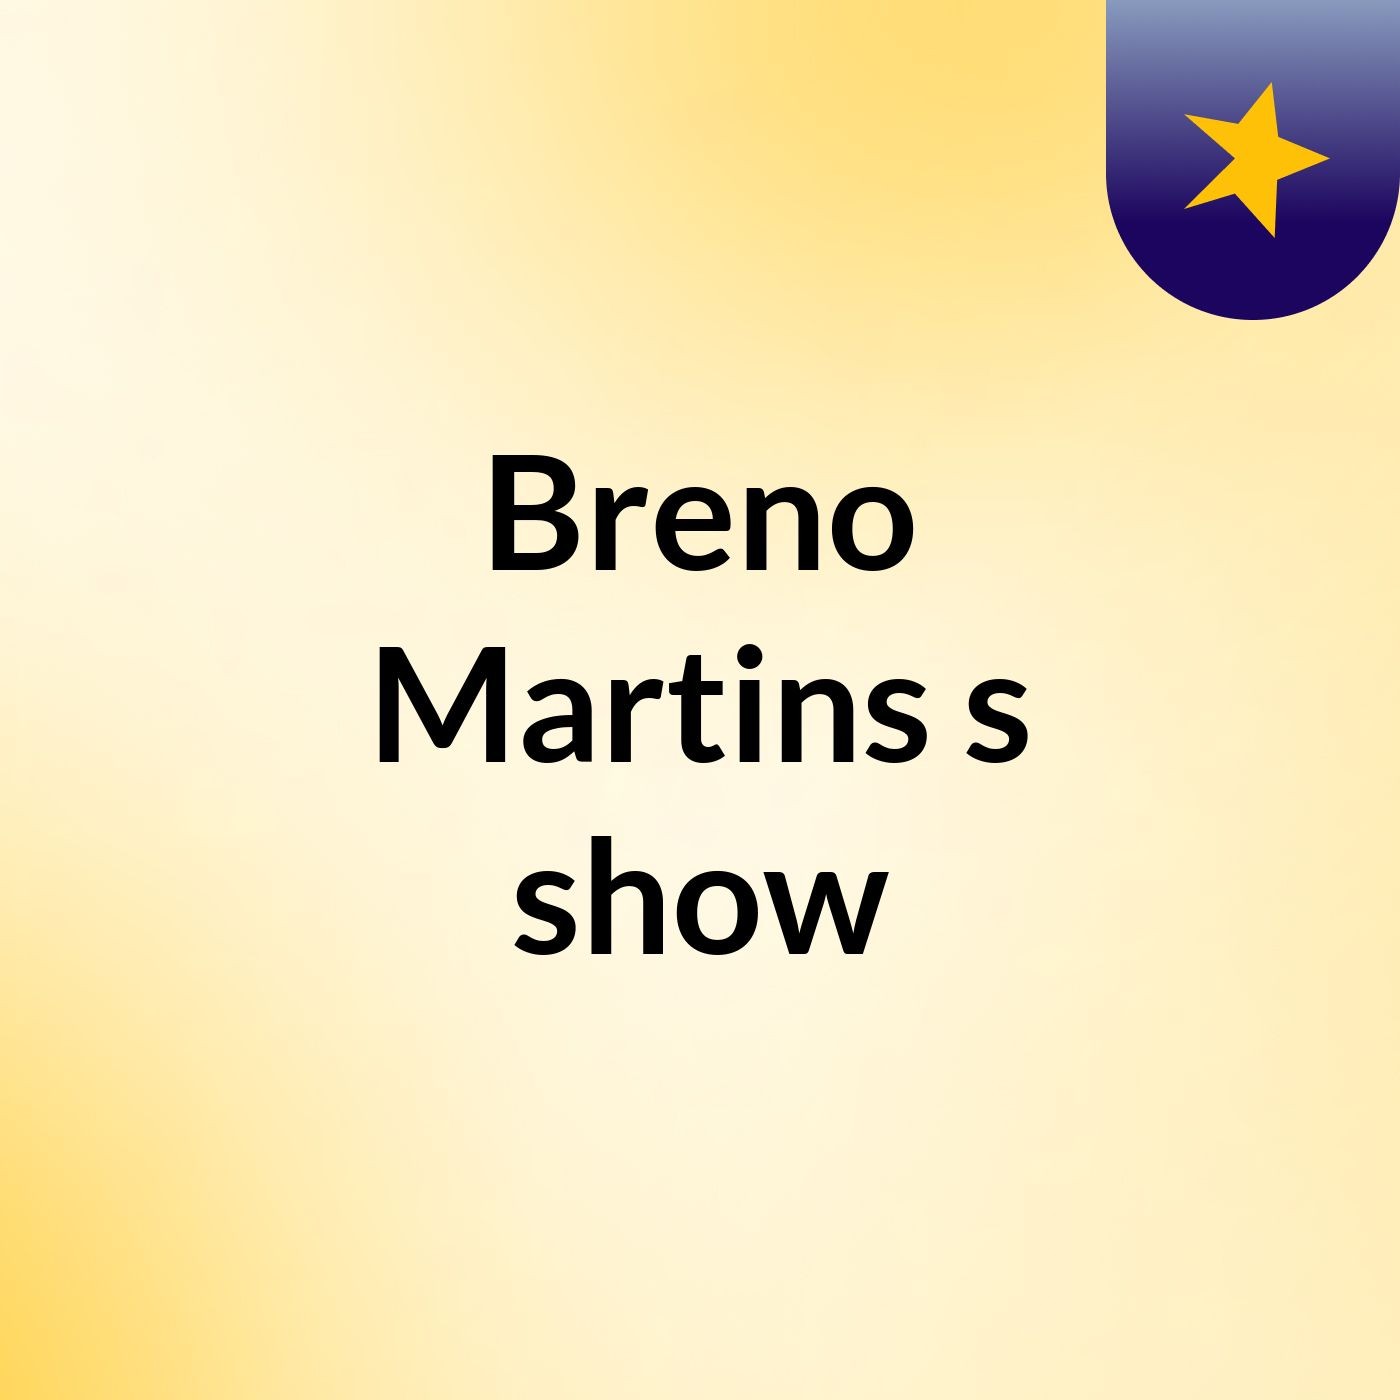 Breno Martins's show